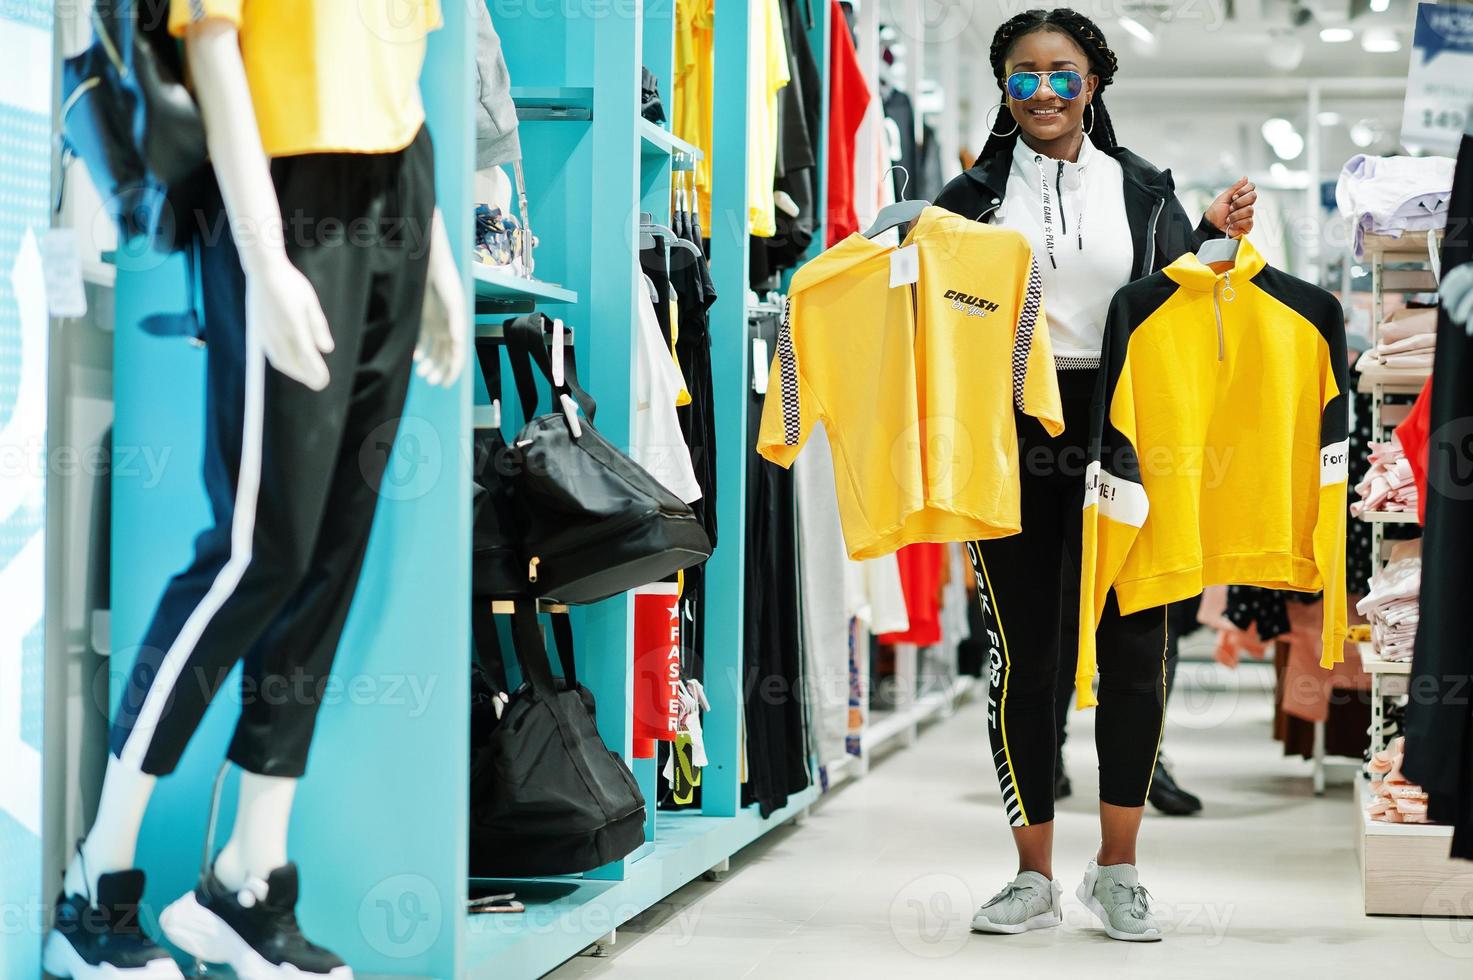 mujeres afroamericanas en chándales y gafas de sol comprando en el centro comercial de ropa deportiva contra estantes. ella elige camiseta amarilla. tema de la tienda de deportes. foto